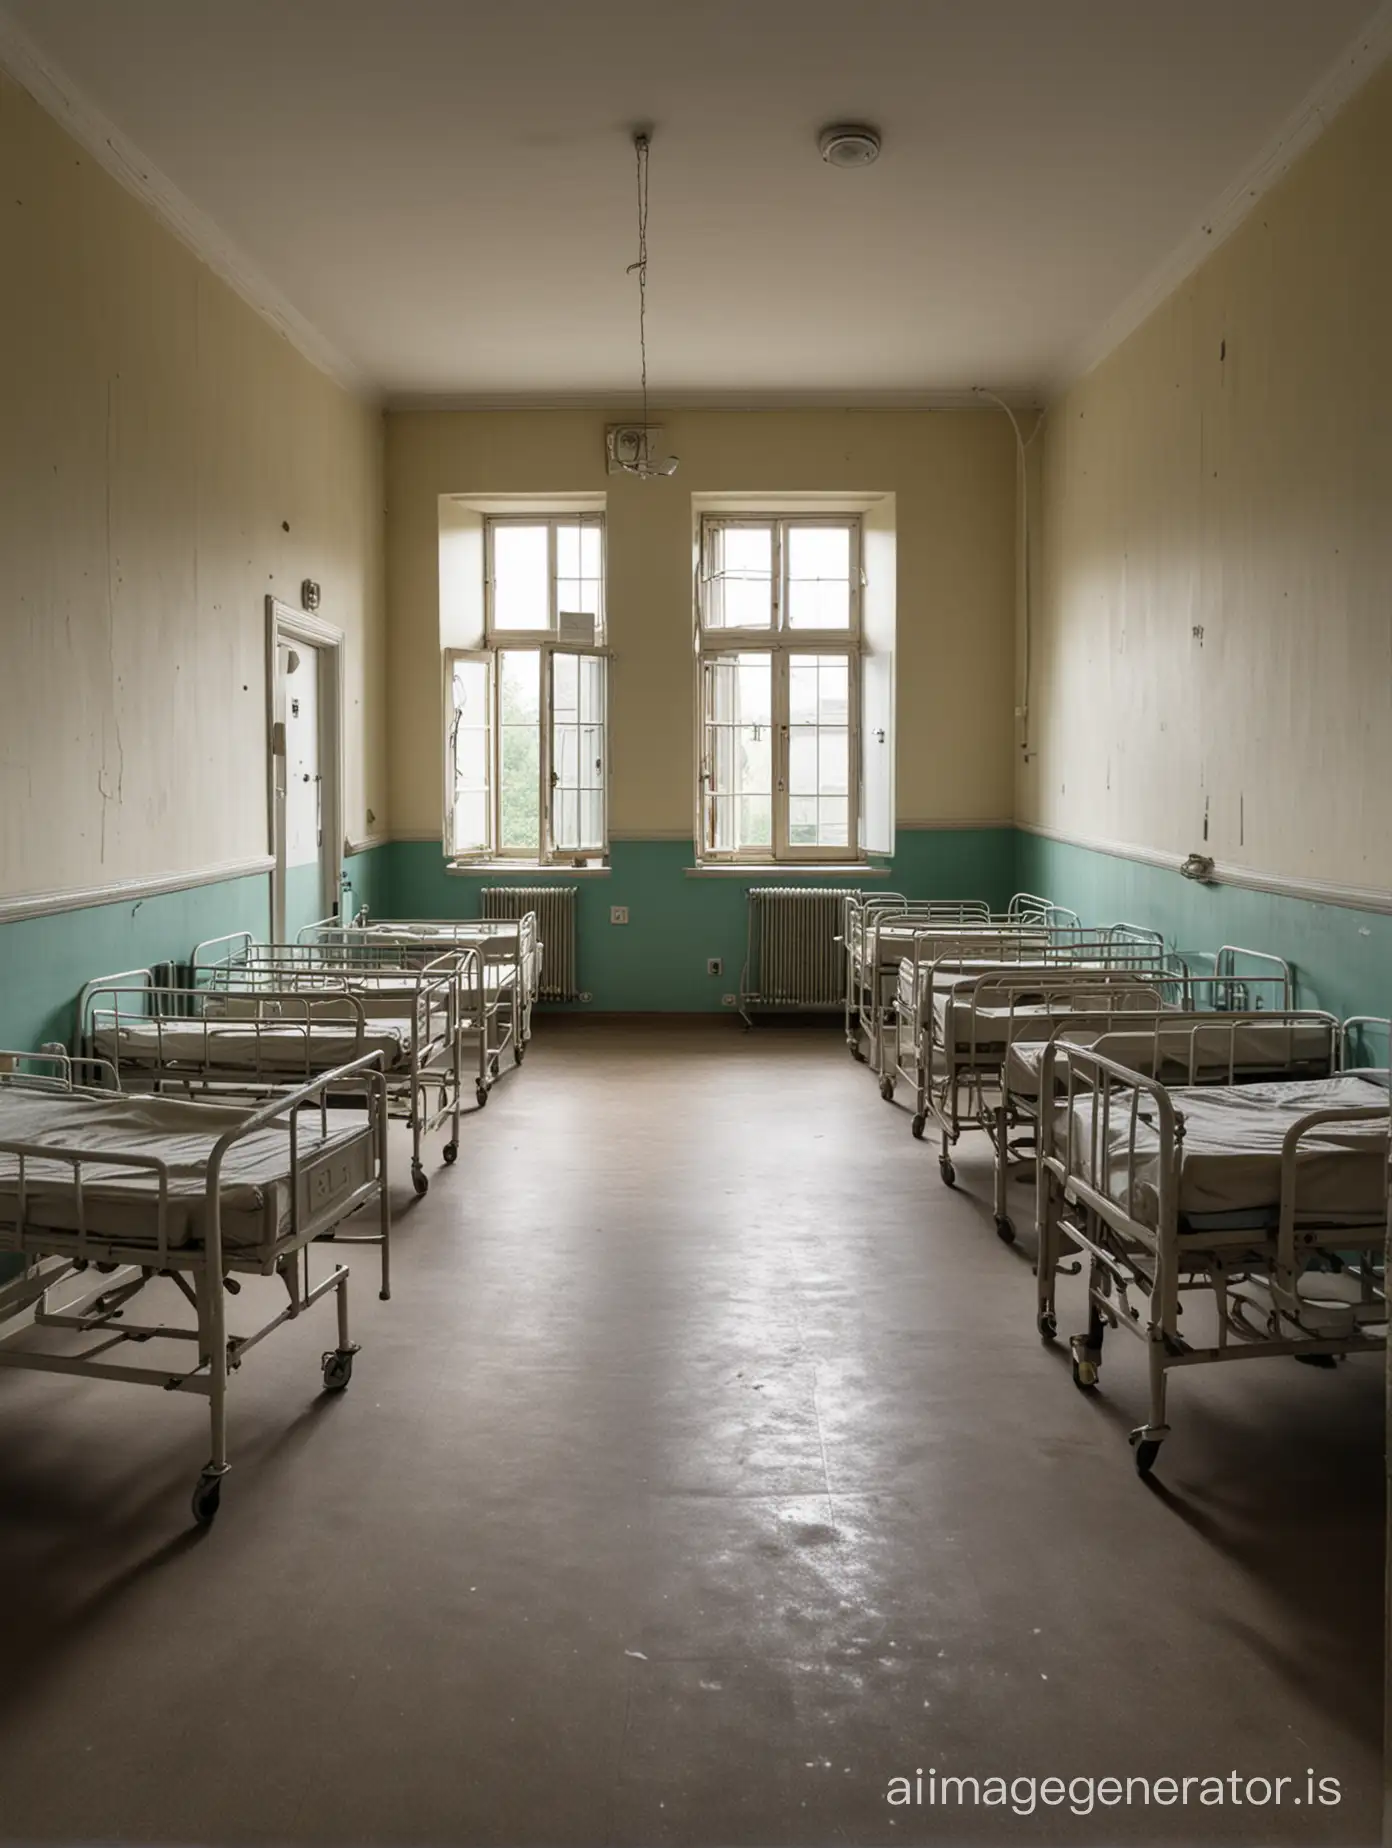 A ward in a psychiatric hospital